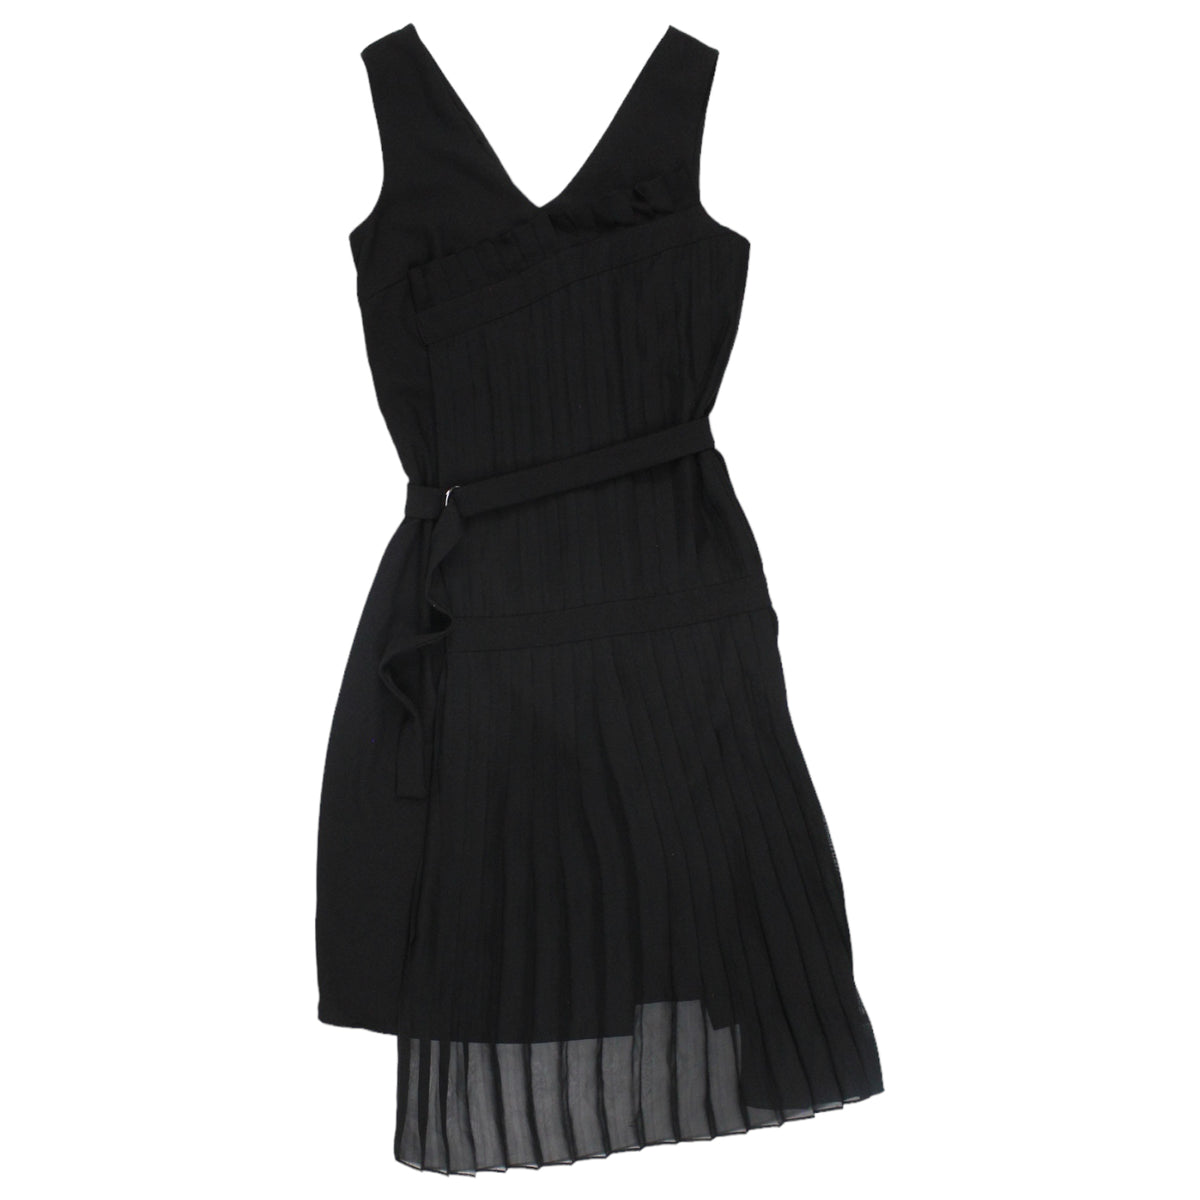 Finery Black Pleat Front Crepe/Chiffon Dress